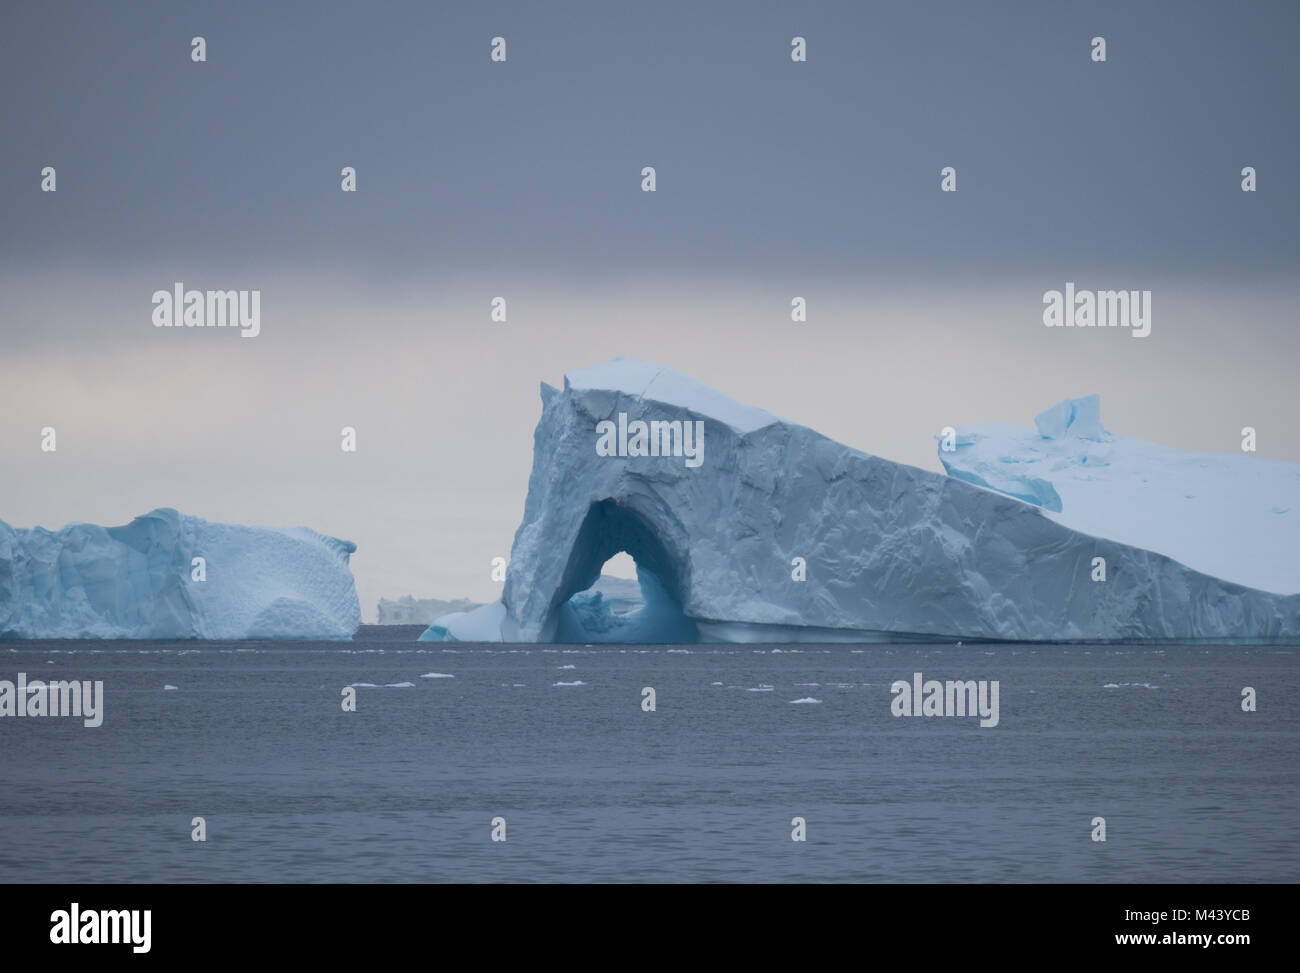 Ein großer Eisberg mit einem Torbogen schwebend in Charlotte Bay in der Antarktis. Dichte Wolken sind Gemeinkosten und Stahl grau Wasser in den Vordergrund. Stockfoto